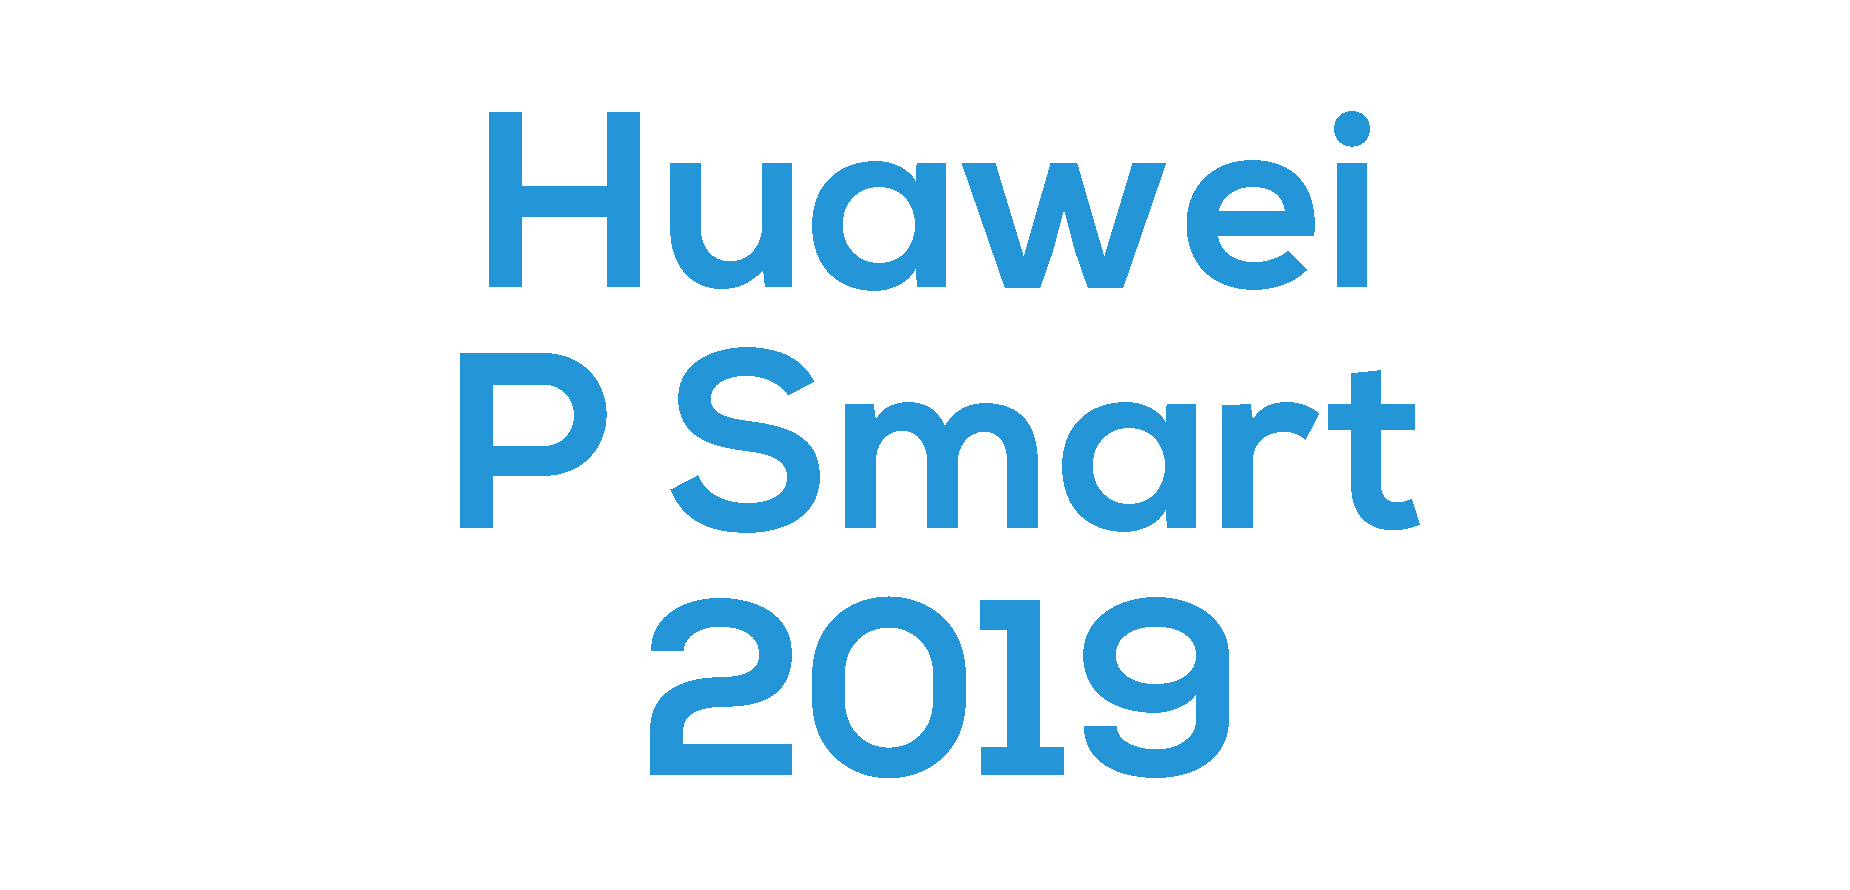 Huawei P Smart